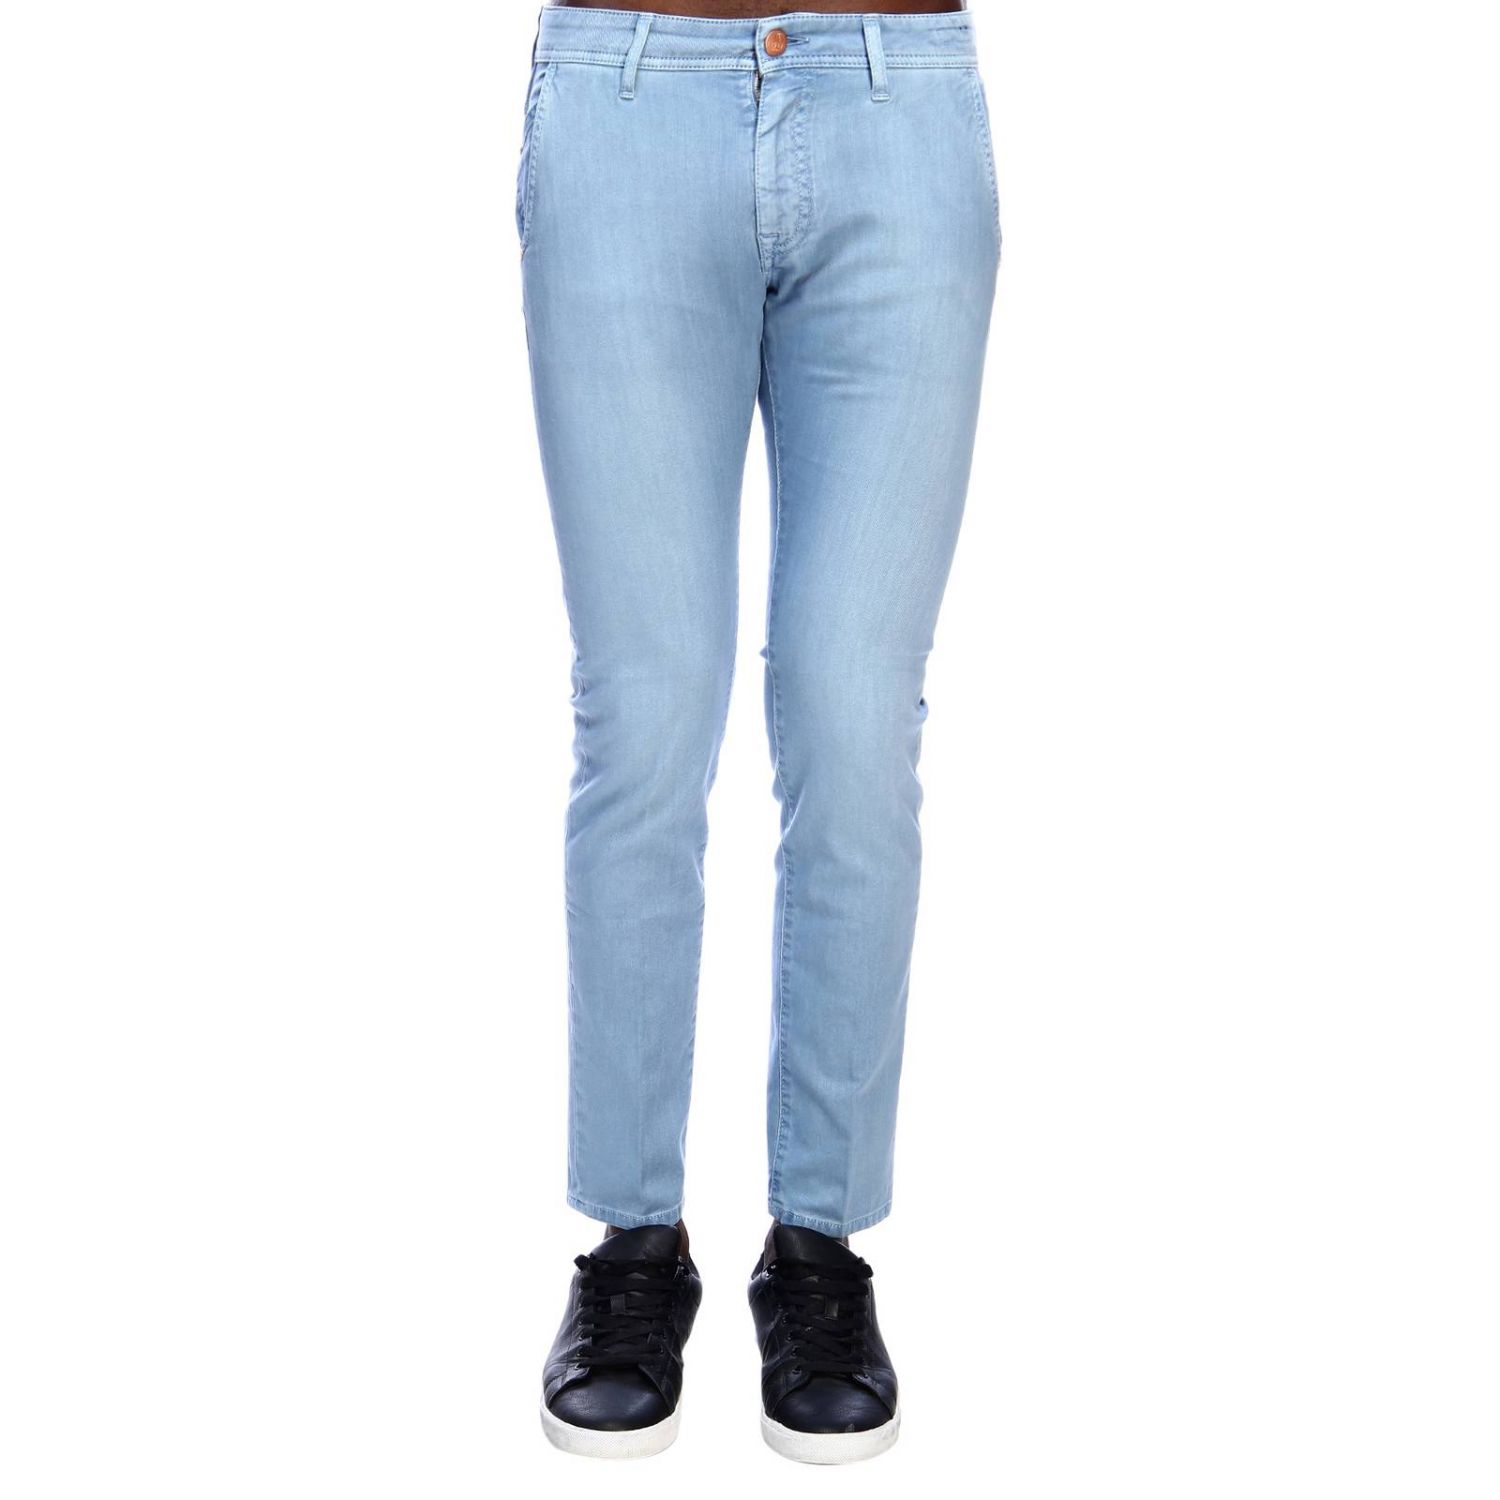 Barba Napoli Outlet: jeans for men - Denim | Barba Napoli jeans 1299 ...